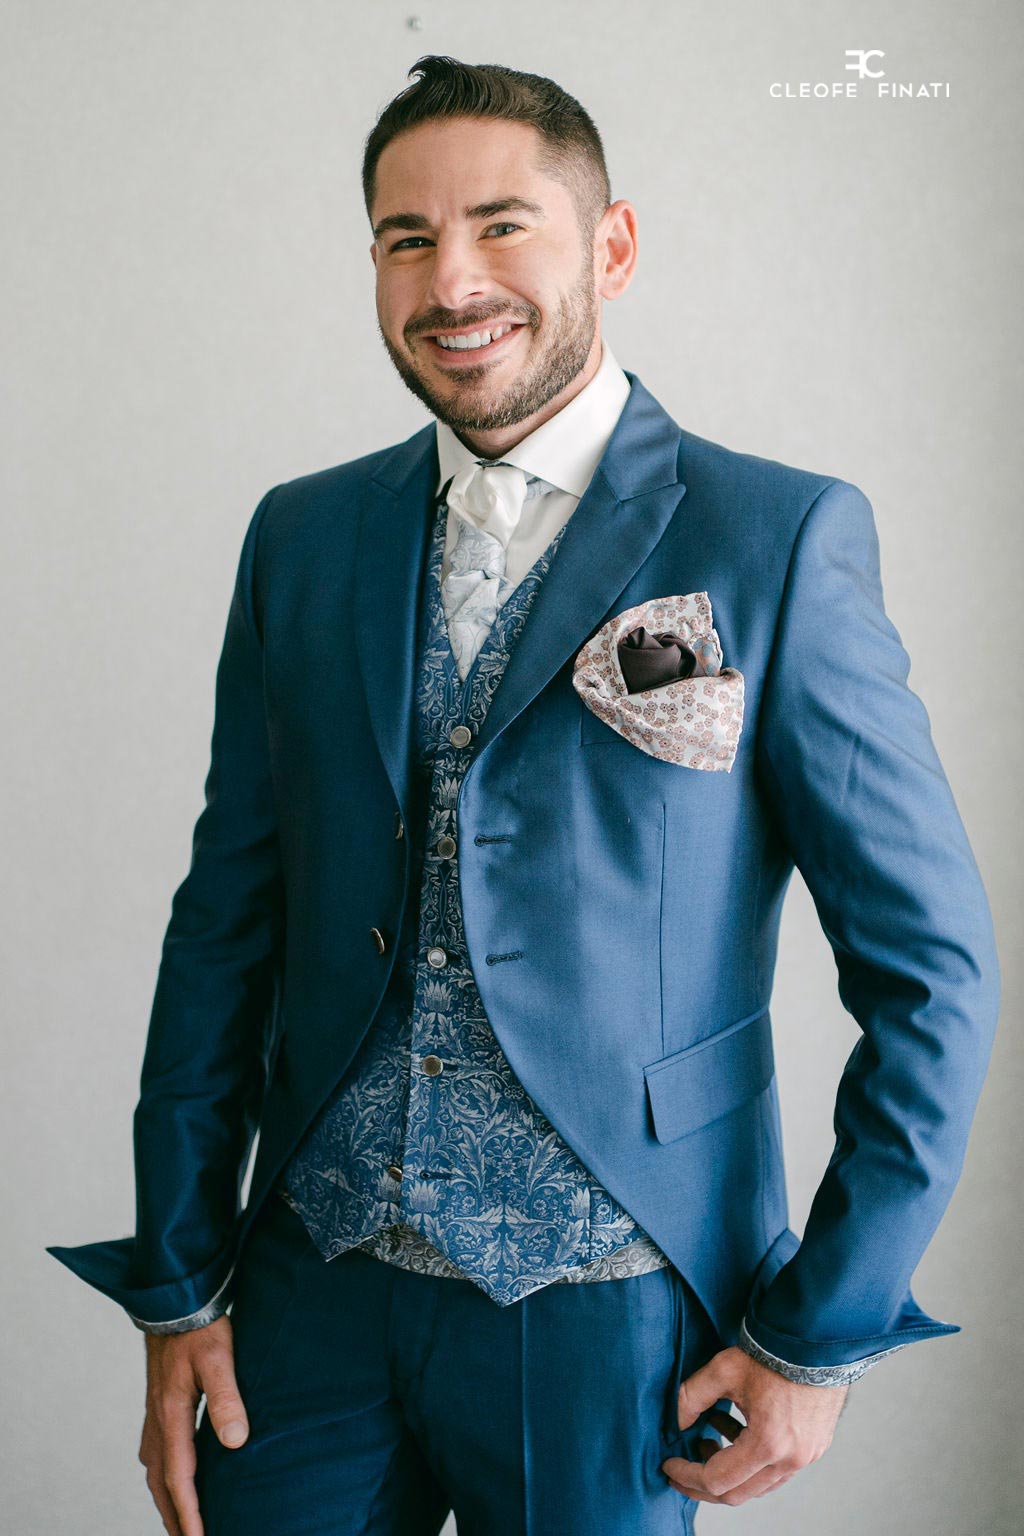 blue-groom-suit-cleofe-finati-wedding-suit